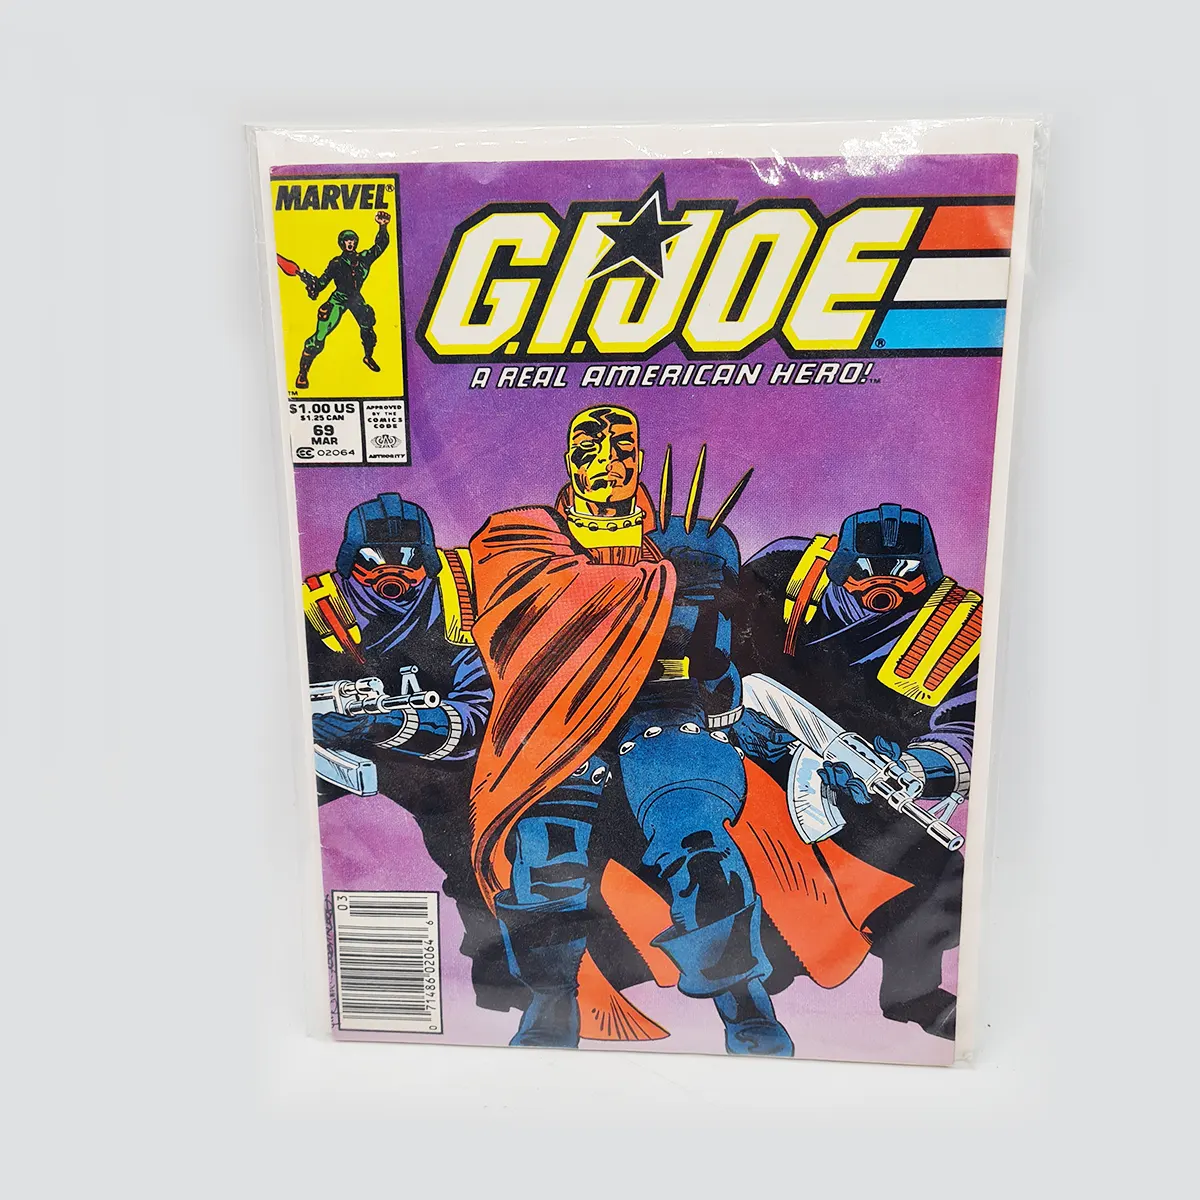 G.I Joe 69